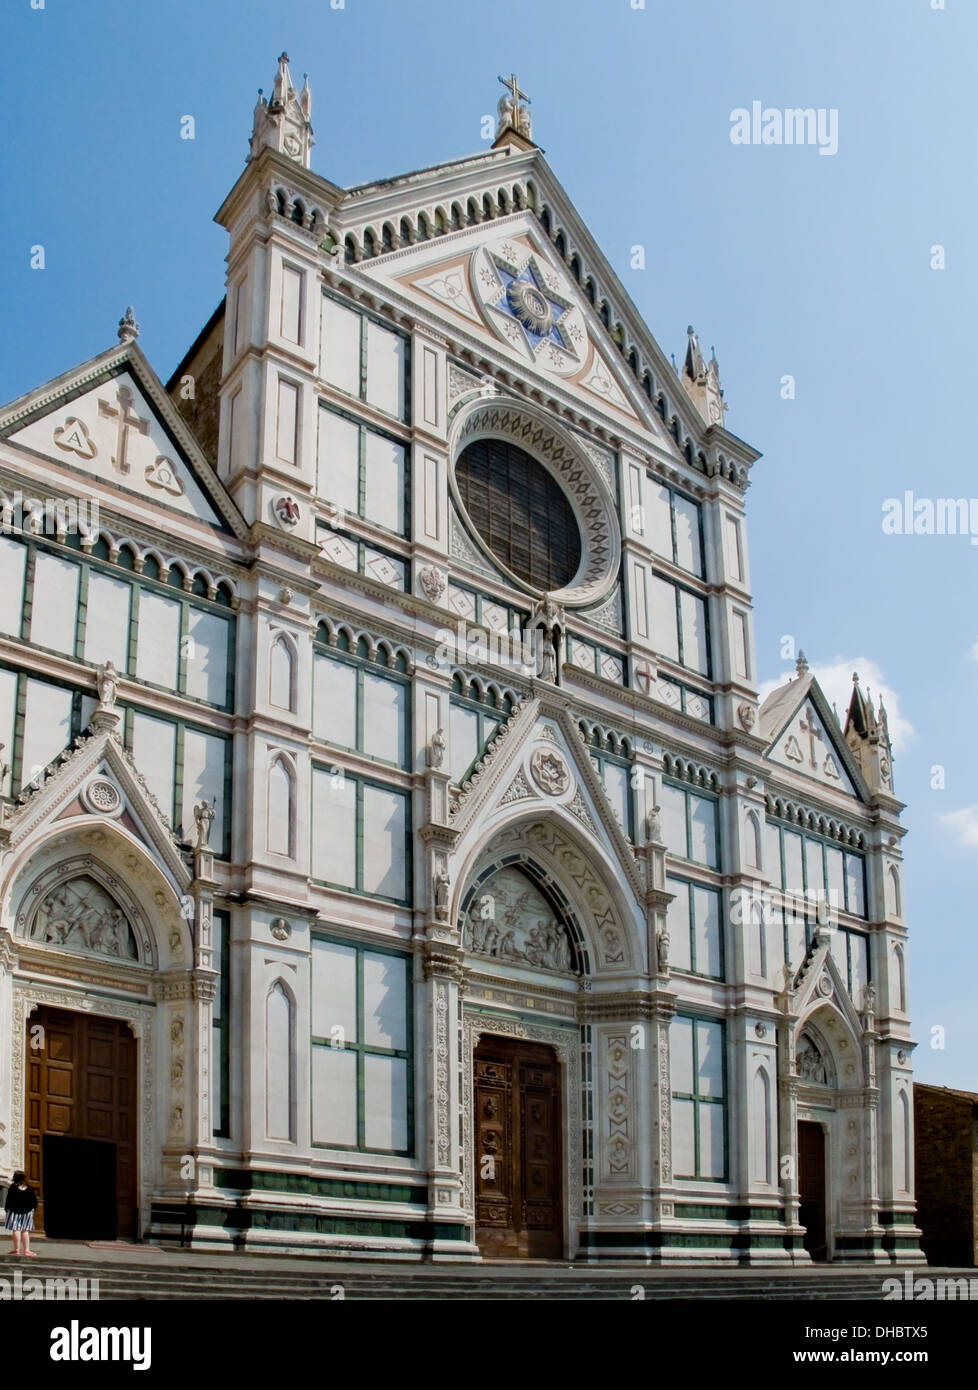 Die neugotische Fassade der Basilica di Santa Croce. Florenz, Italien Stockfoto